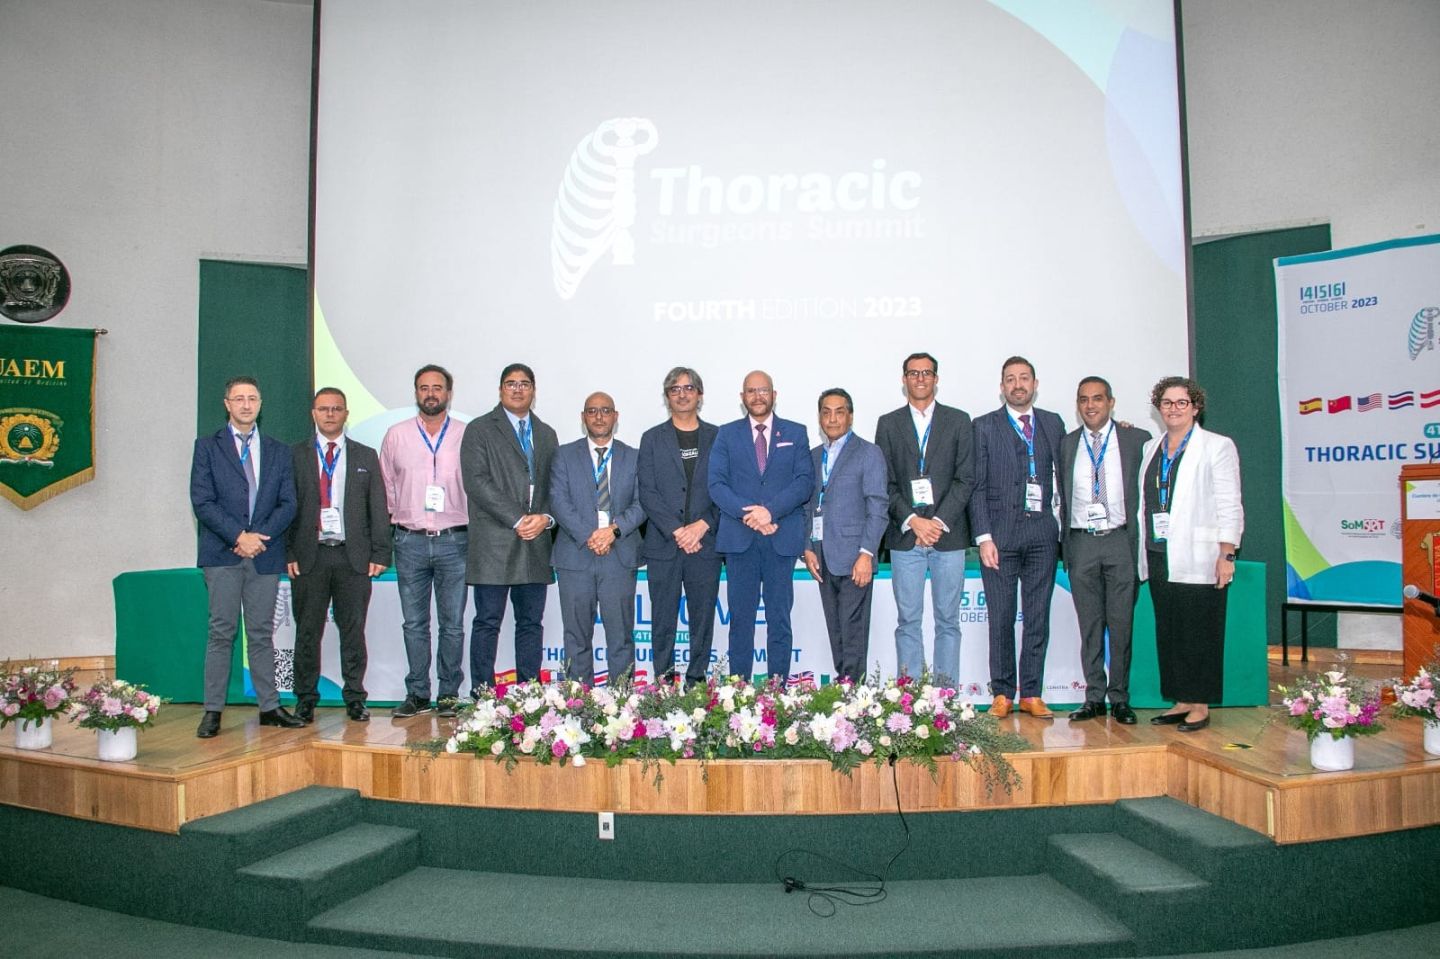 Médicos Adscritos al ISSEMYM Participan en Cuarta Cumbre Internacional de Cirujanos Torácicos; Buscan Realizar Trasplantes de Pulmón en el Estado de México.